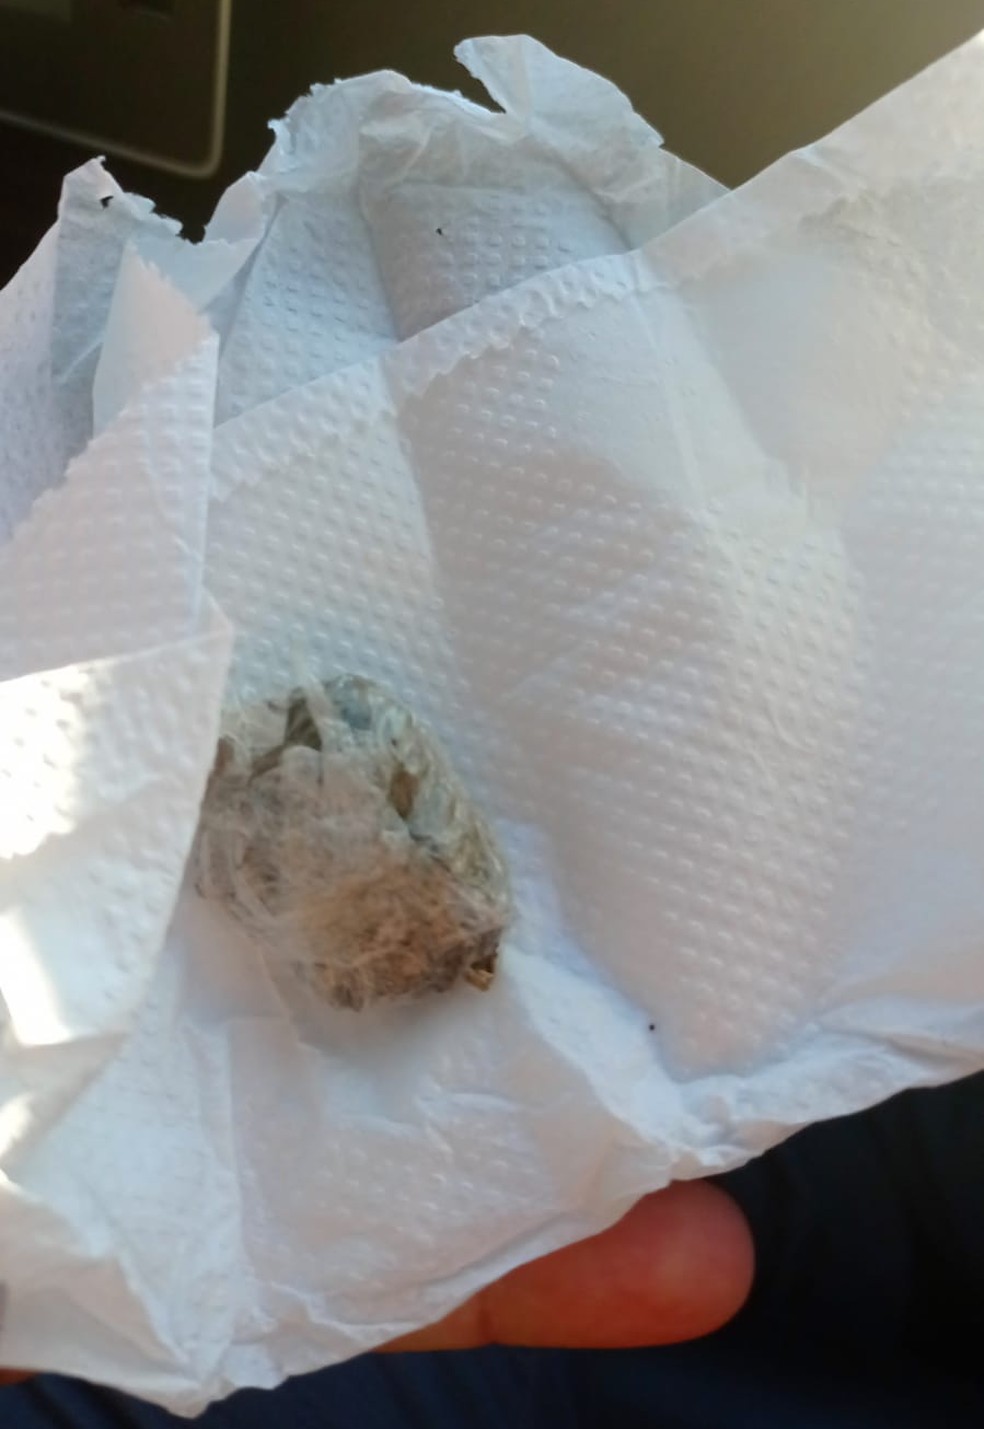 Polícia disse que foi encontrada uma porção de maconha no bolso do adolescente — Foto: Polícia Militar